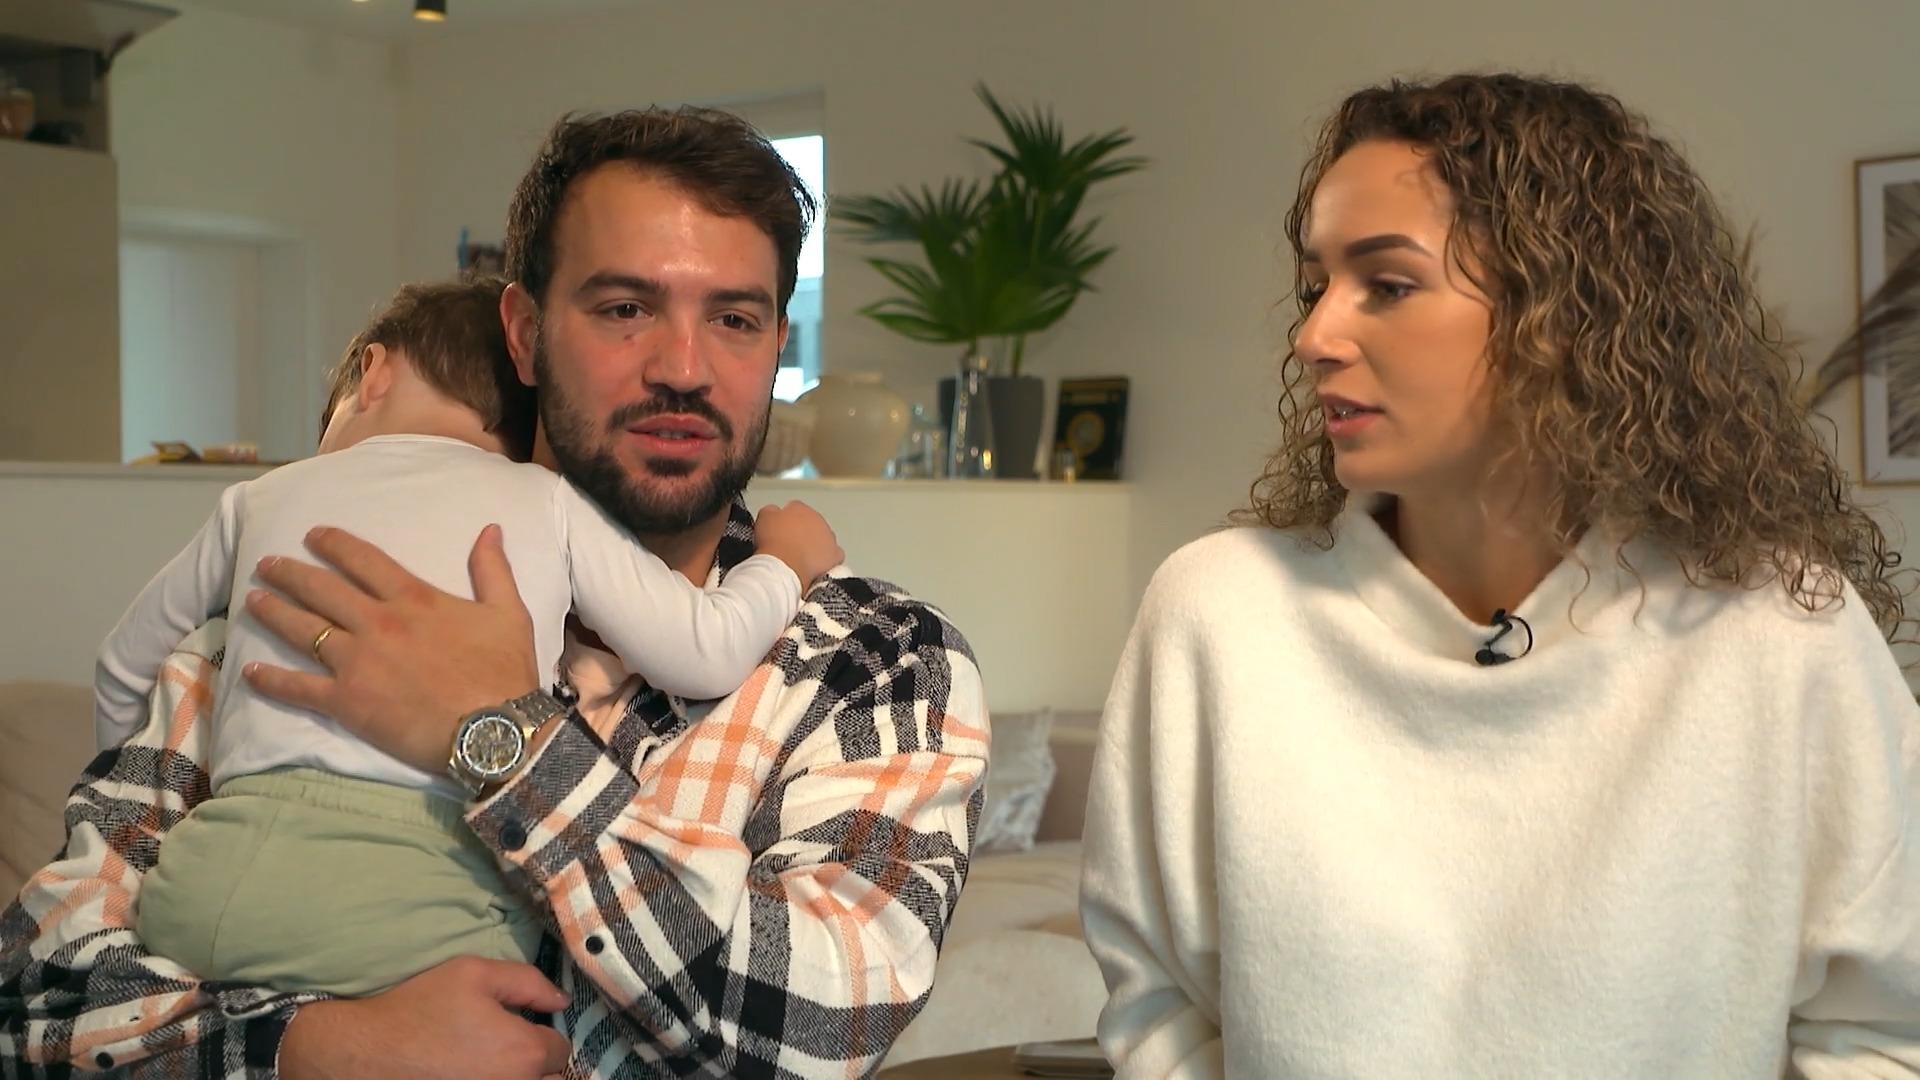 Wieder schwanger: Yasin & Samira überraschen mit Babynews Dabei steckten die beiden mitten in einer Ehekrise